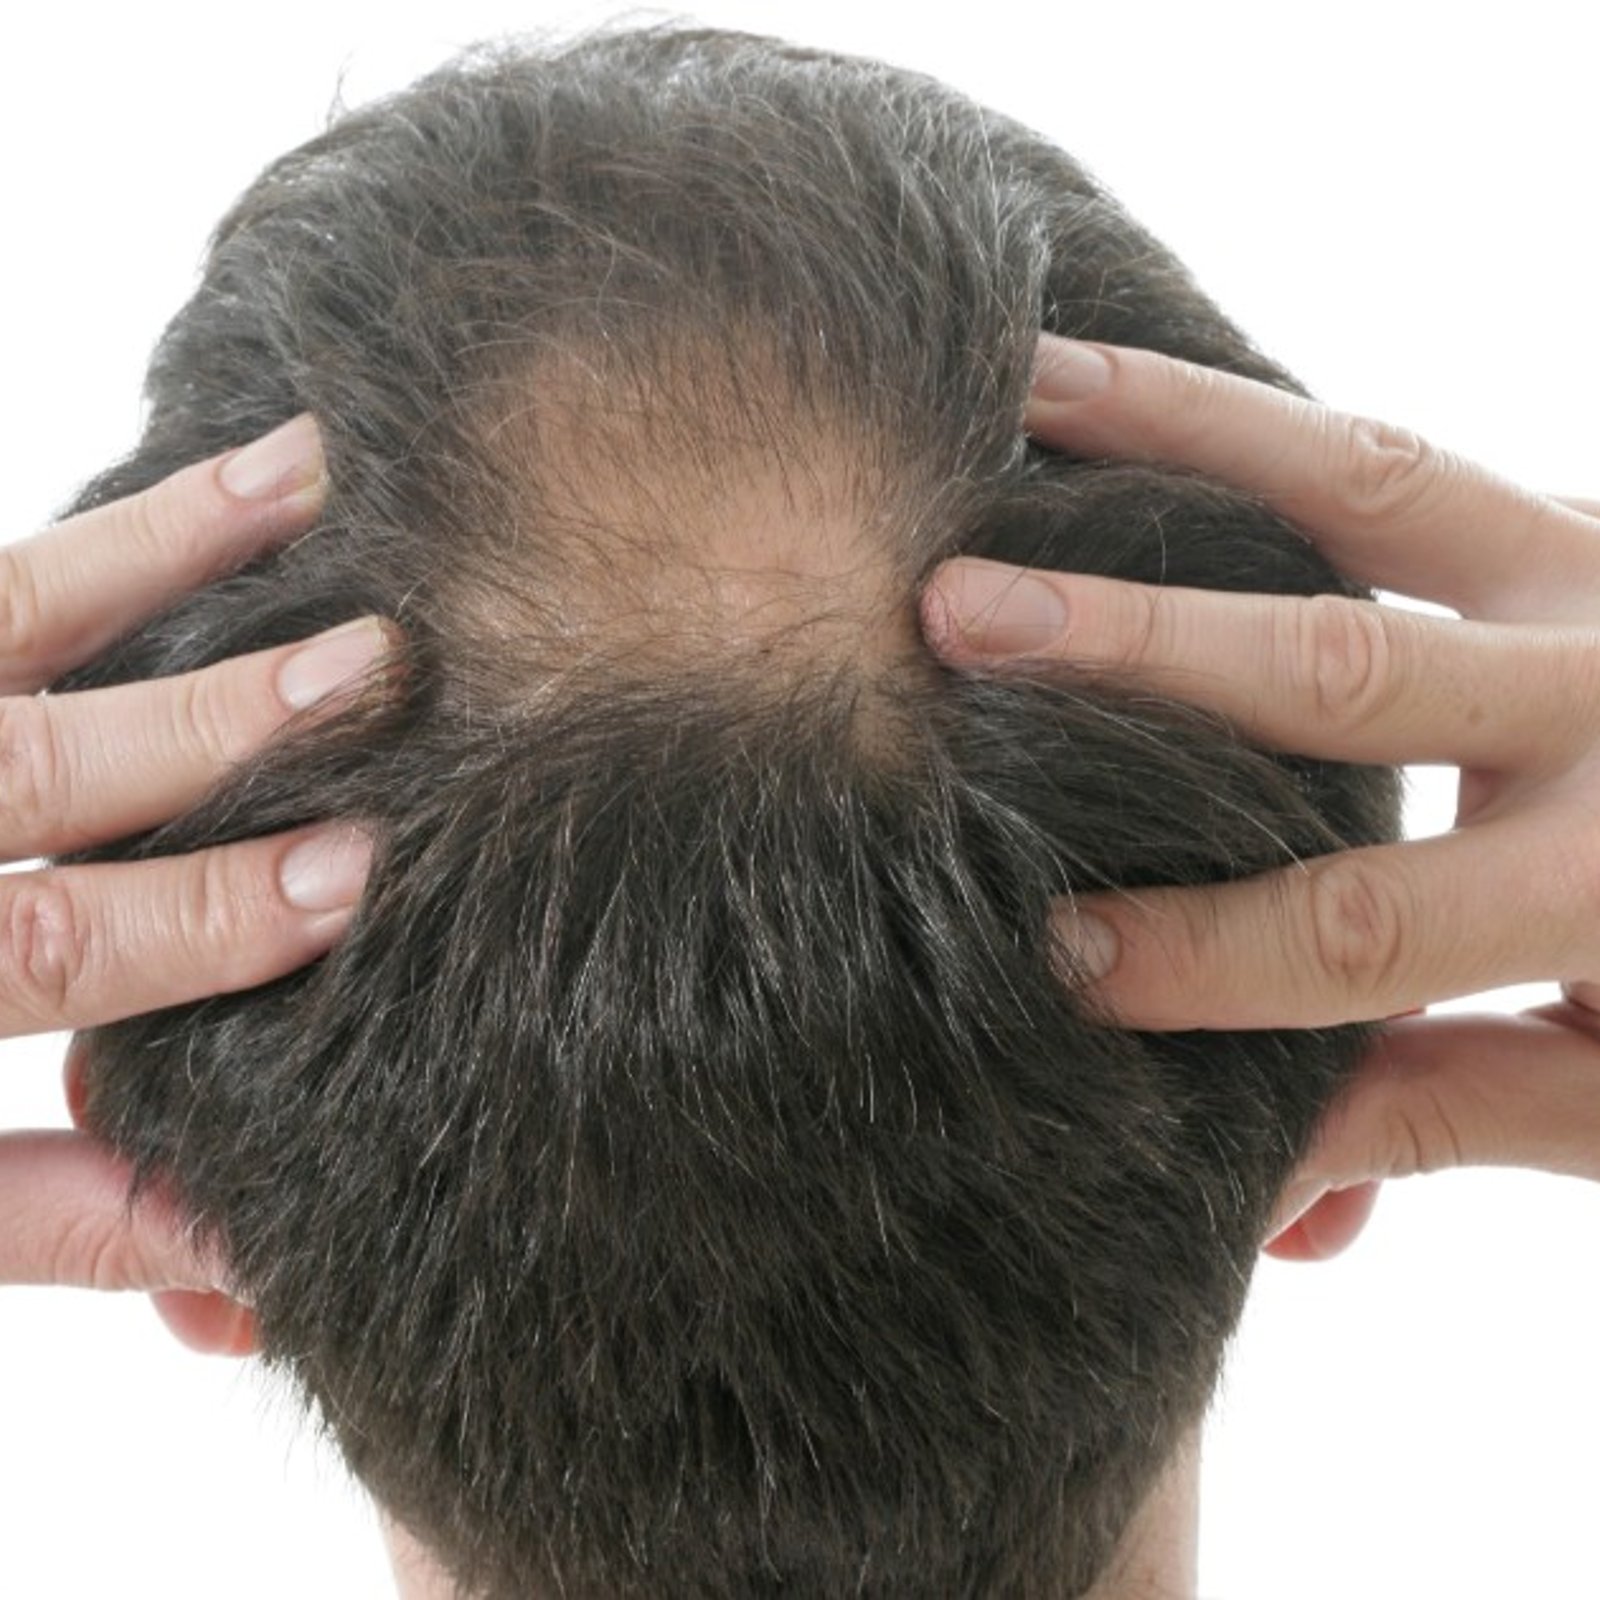 Des chercheurs développent un traitement pour éviter la perte des cheveux